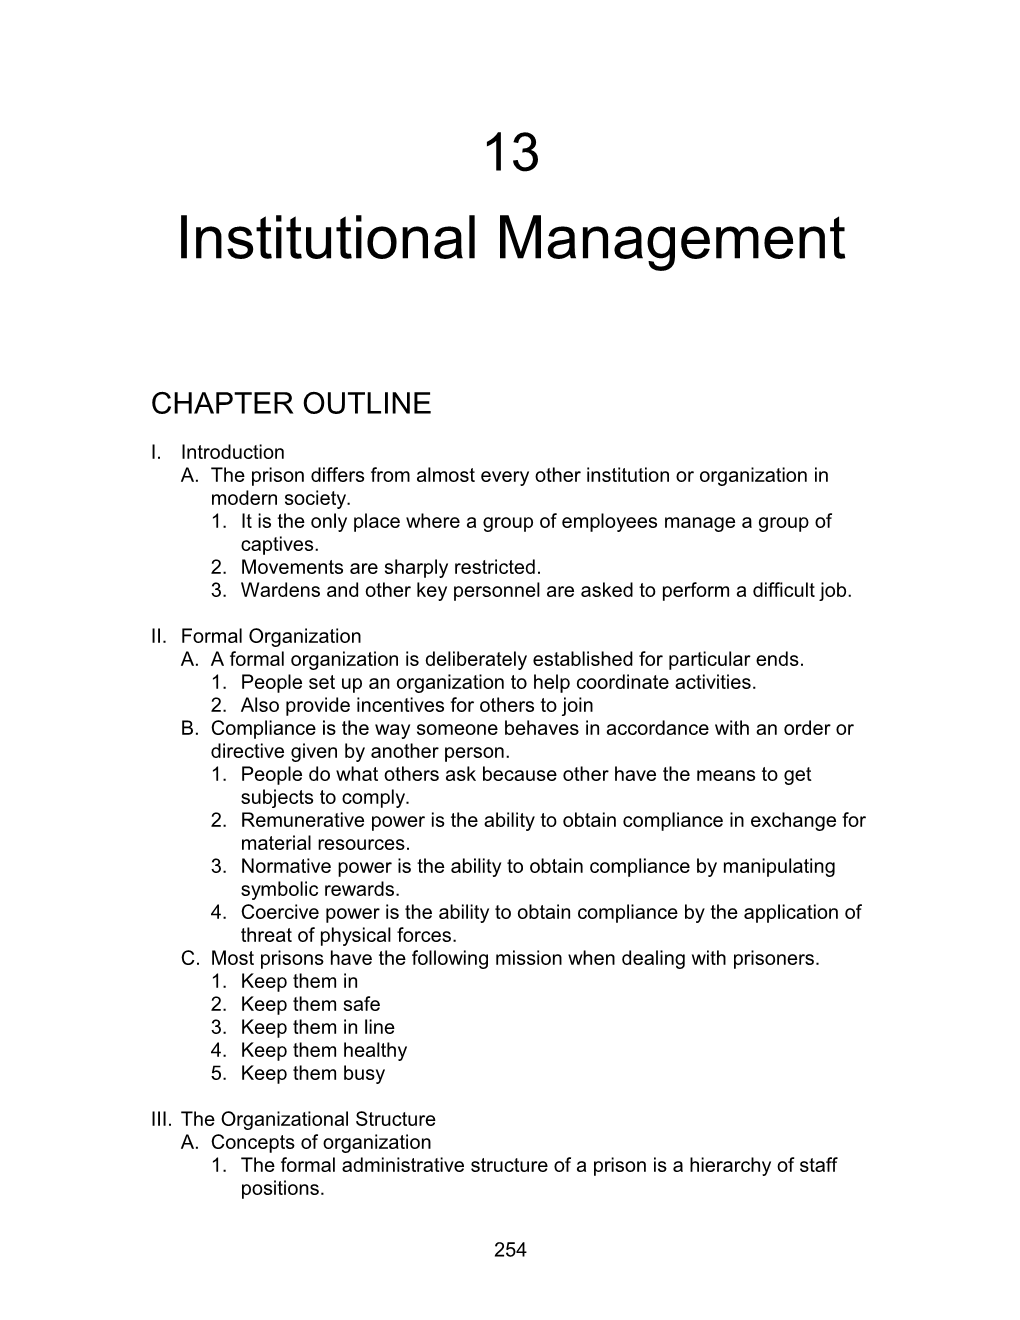 Institutional Management